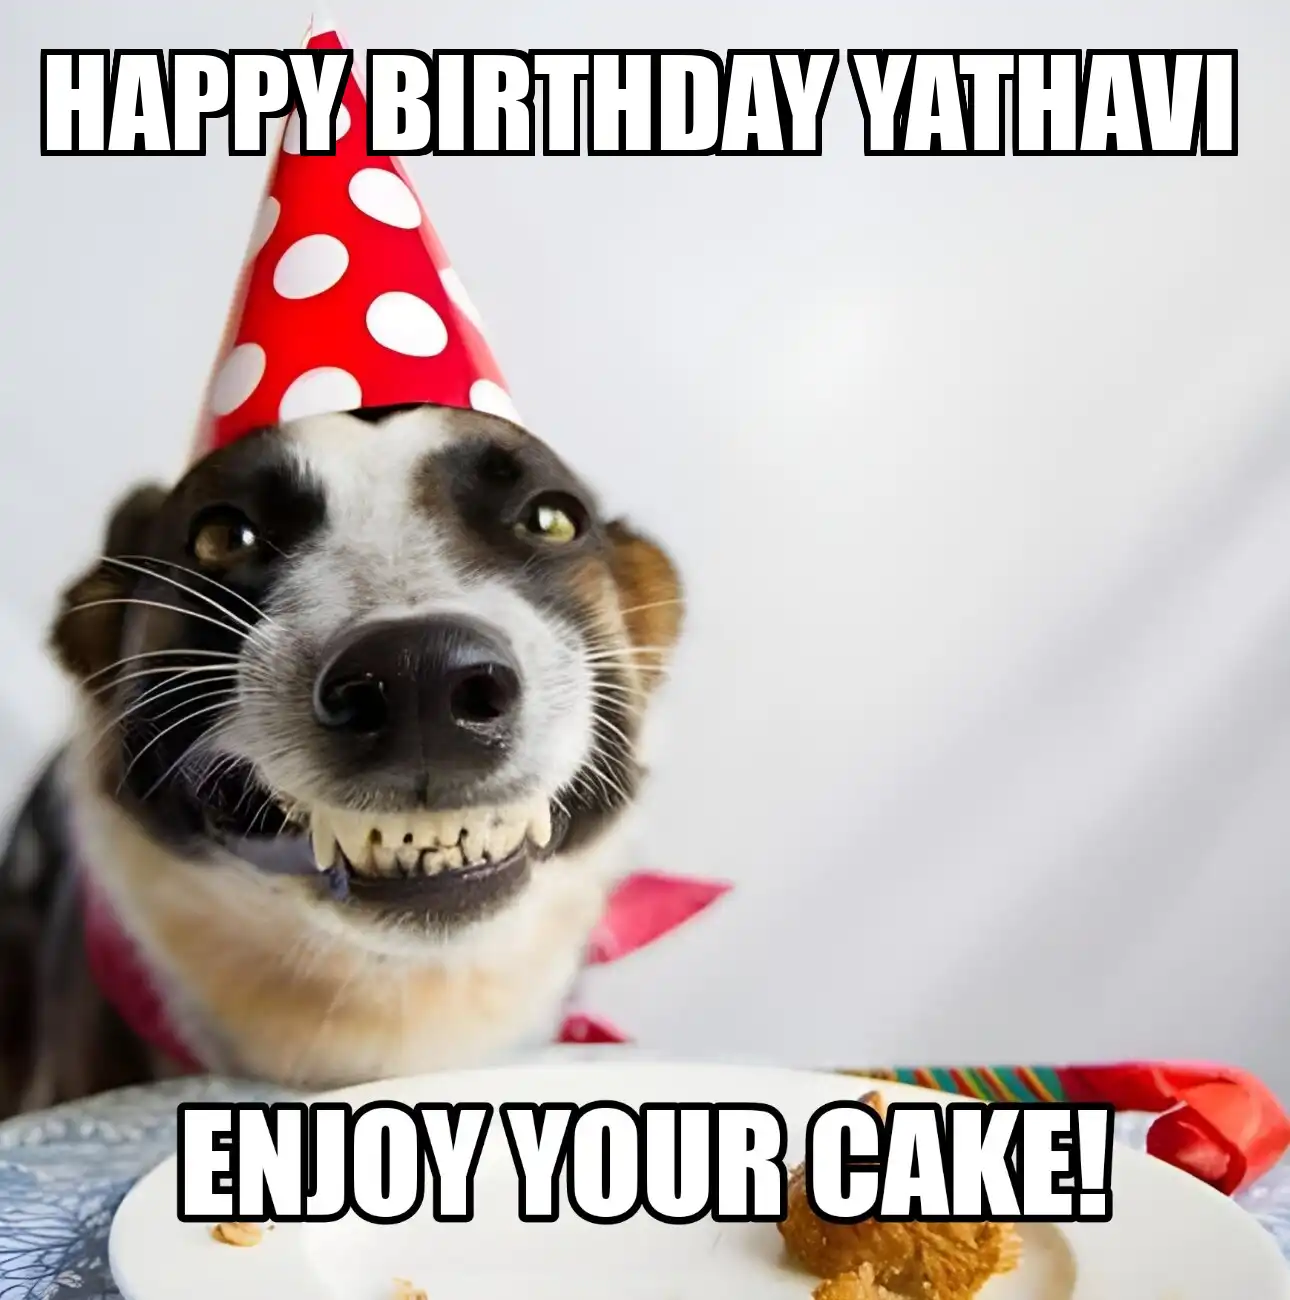 Happy Birthday Yathavi Enjoy Your Cake Dog Meme